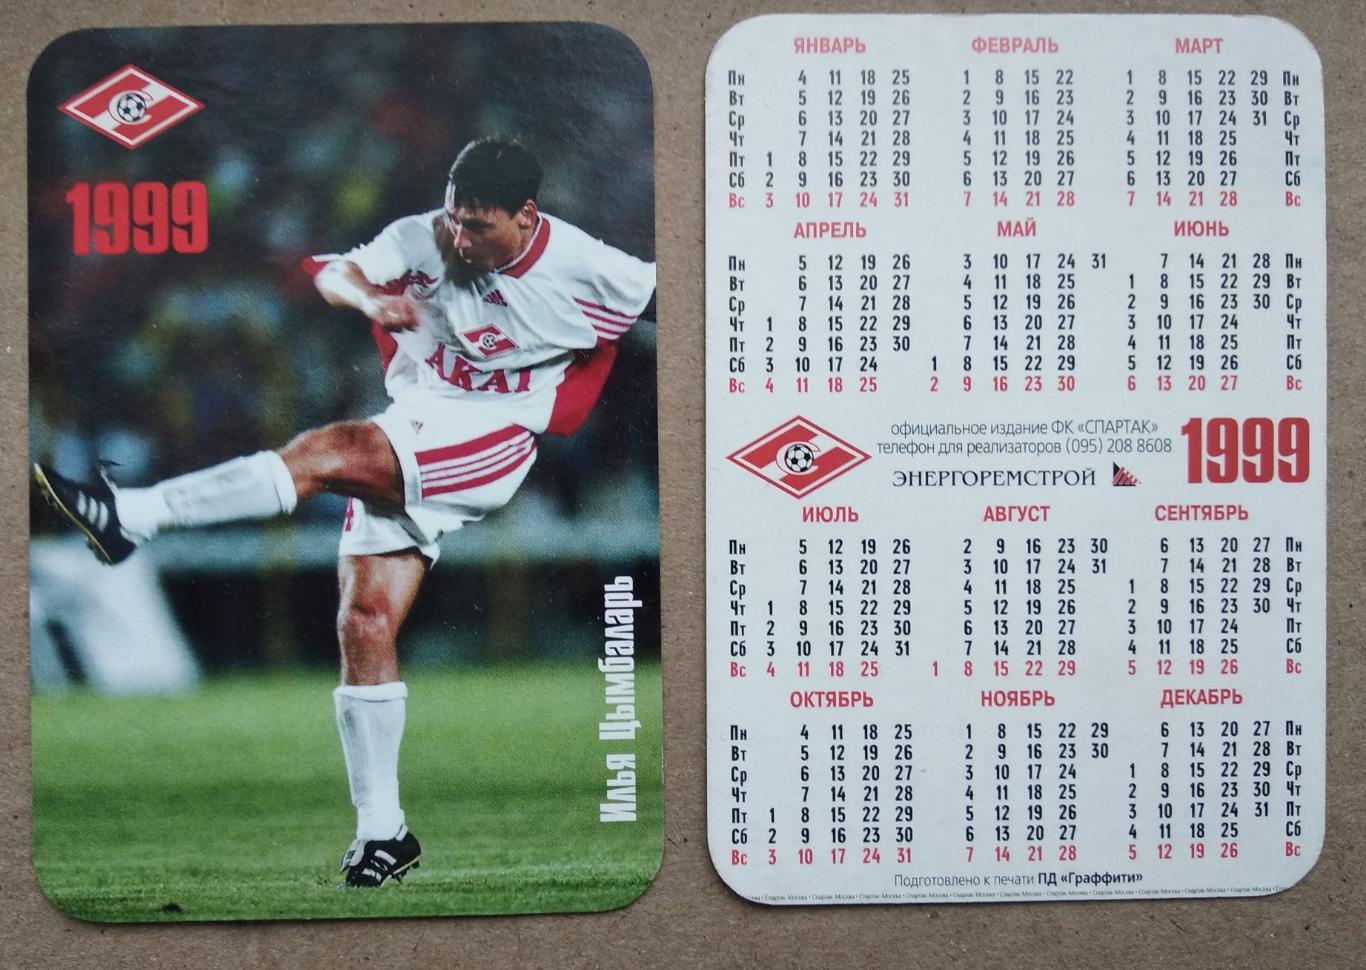 Спартак Москва - Цымбаларь , календарик на 1999 год, официальное издание